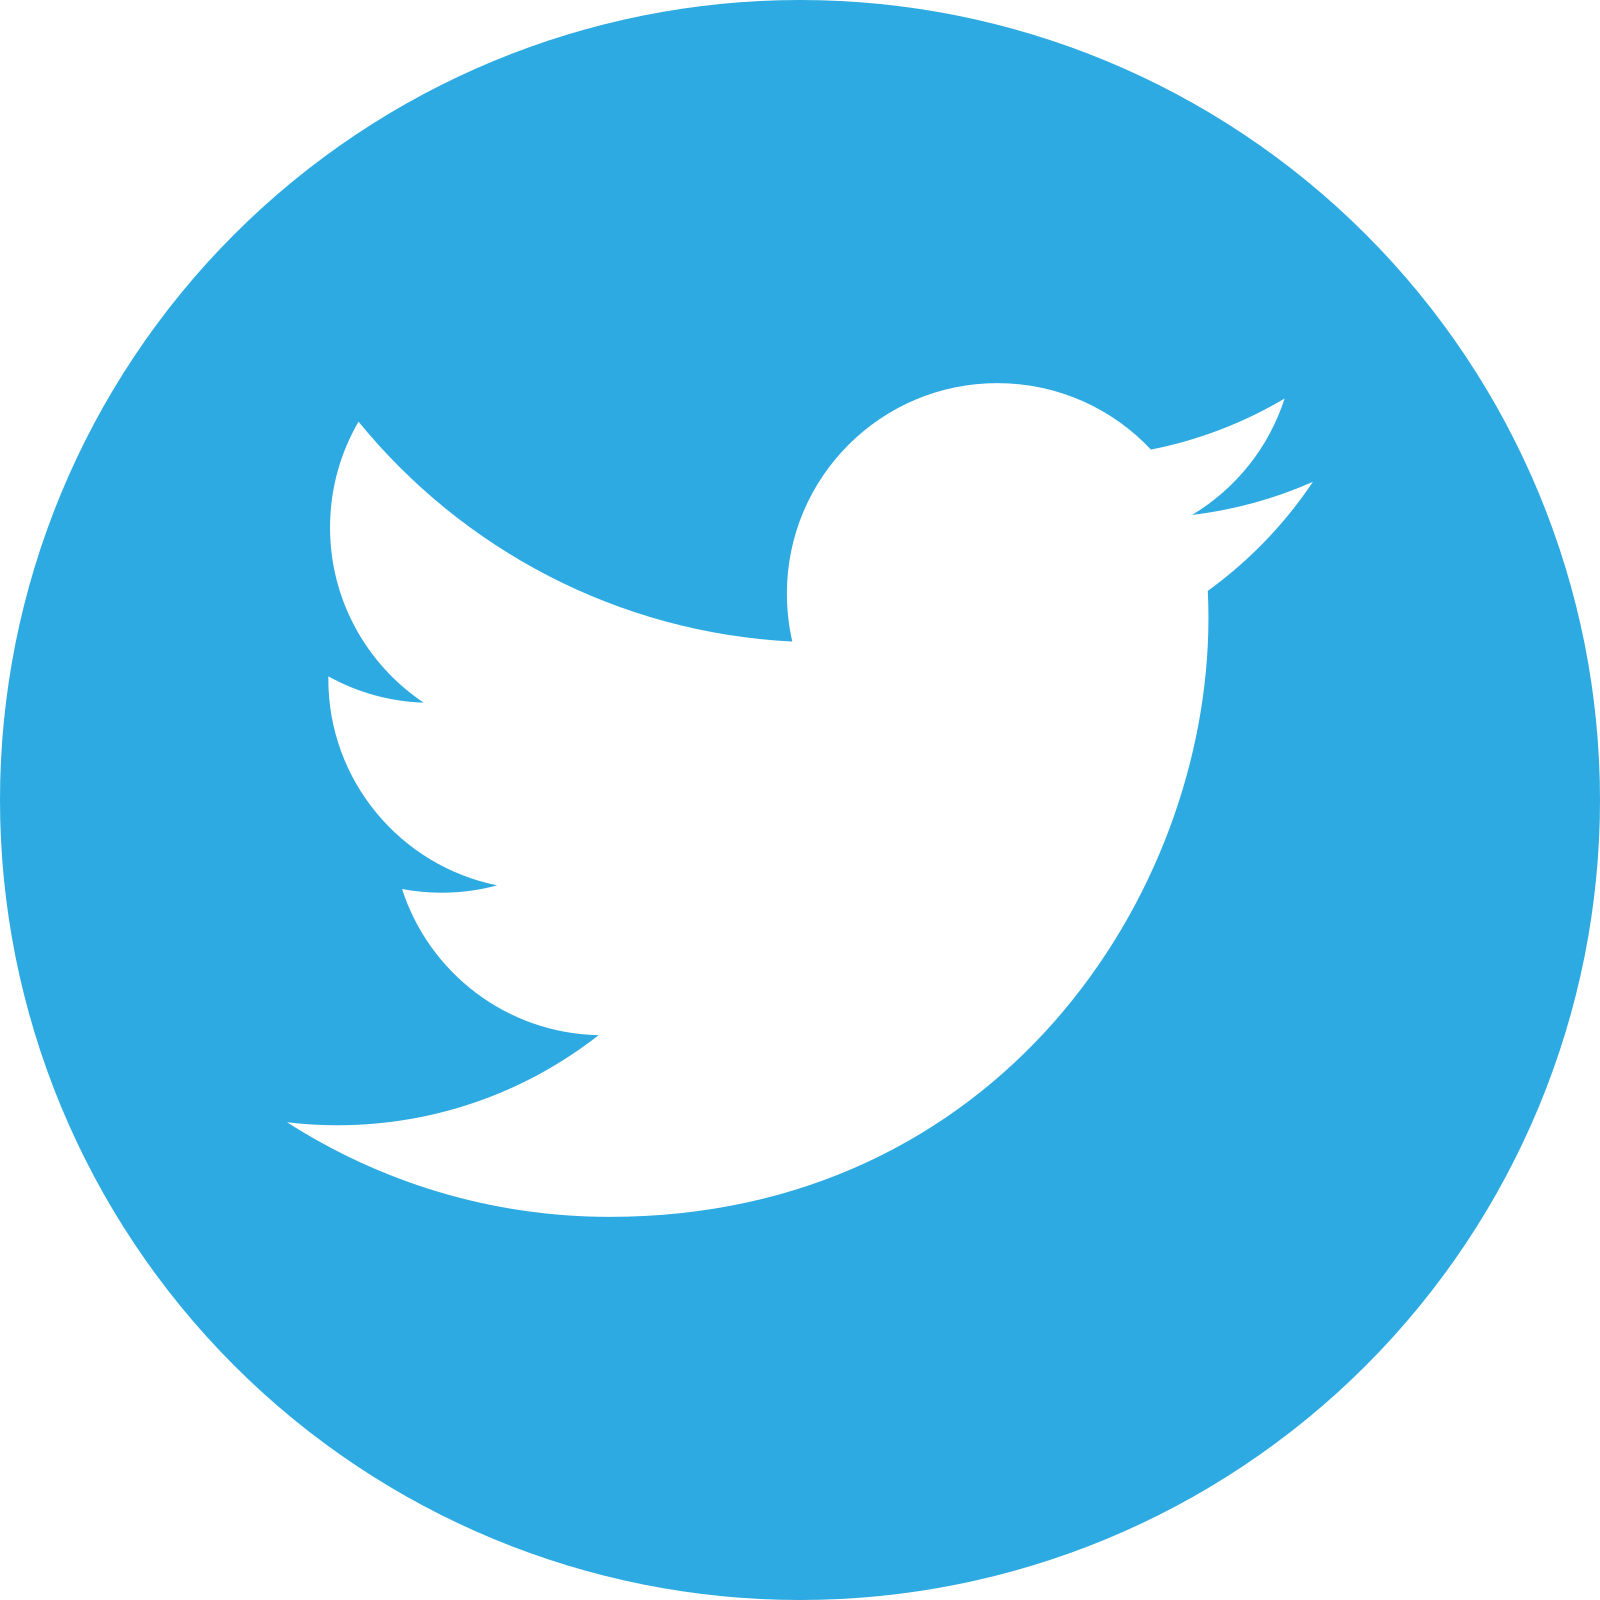 twitter logo 3 - Twitter Logo